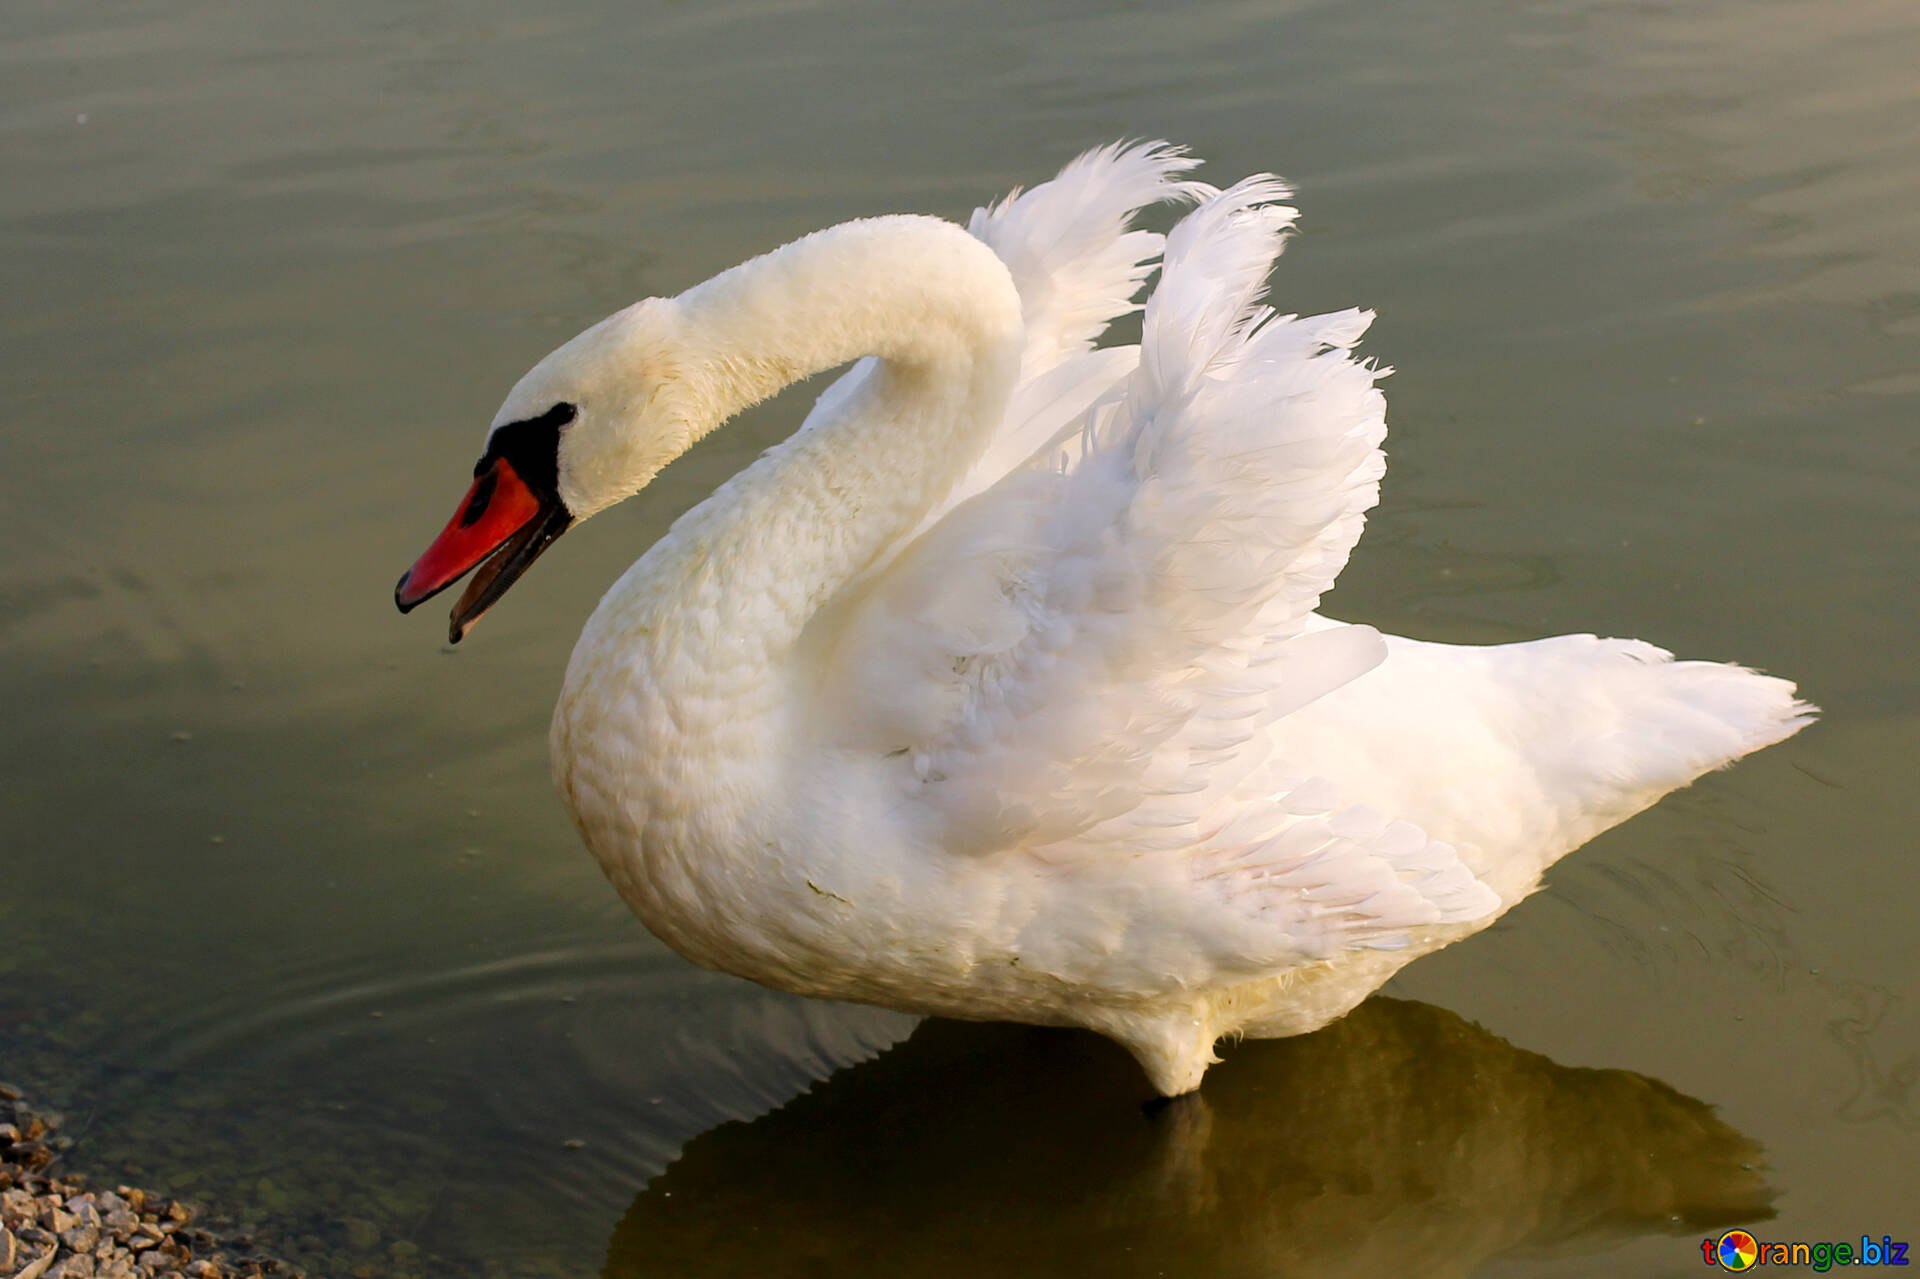 Сайт Знакомств Белый Лебедь